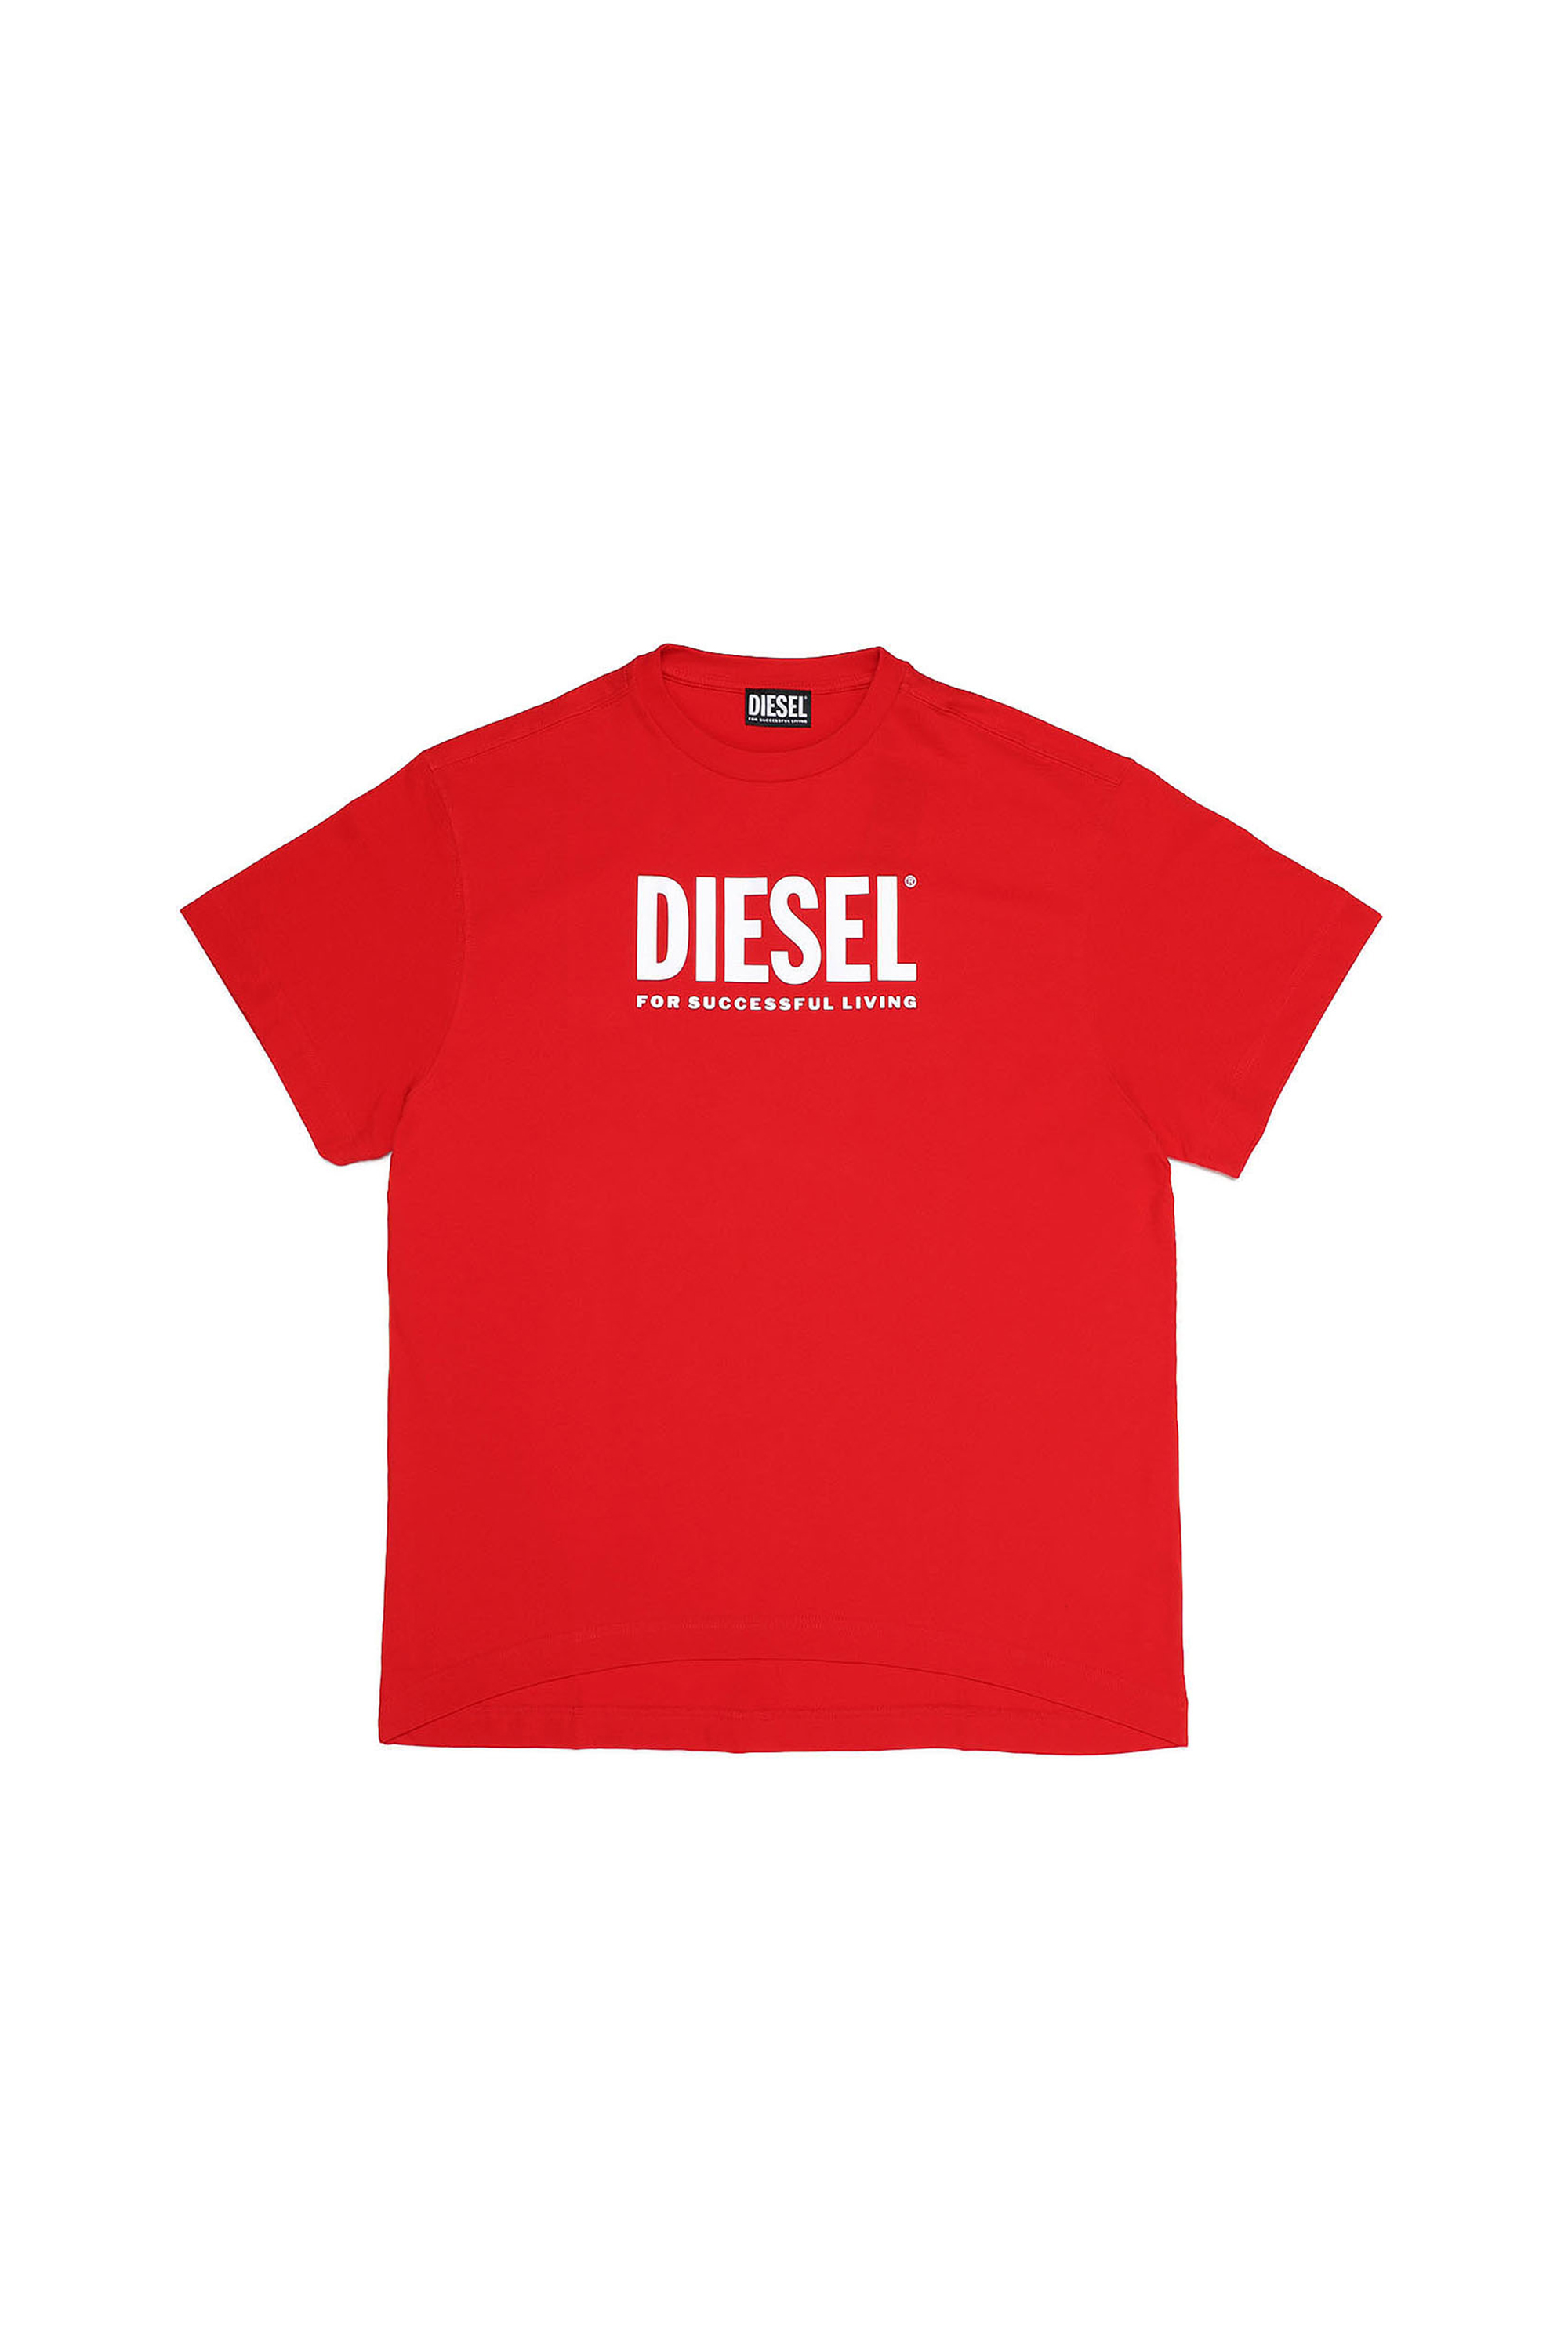 Diesel - DEXTRA, Red - Image 1